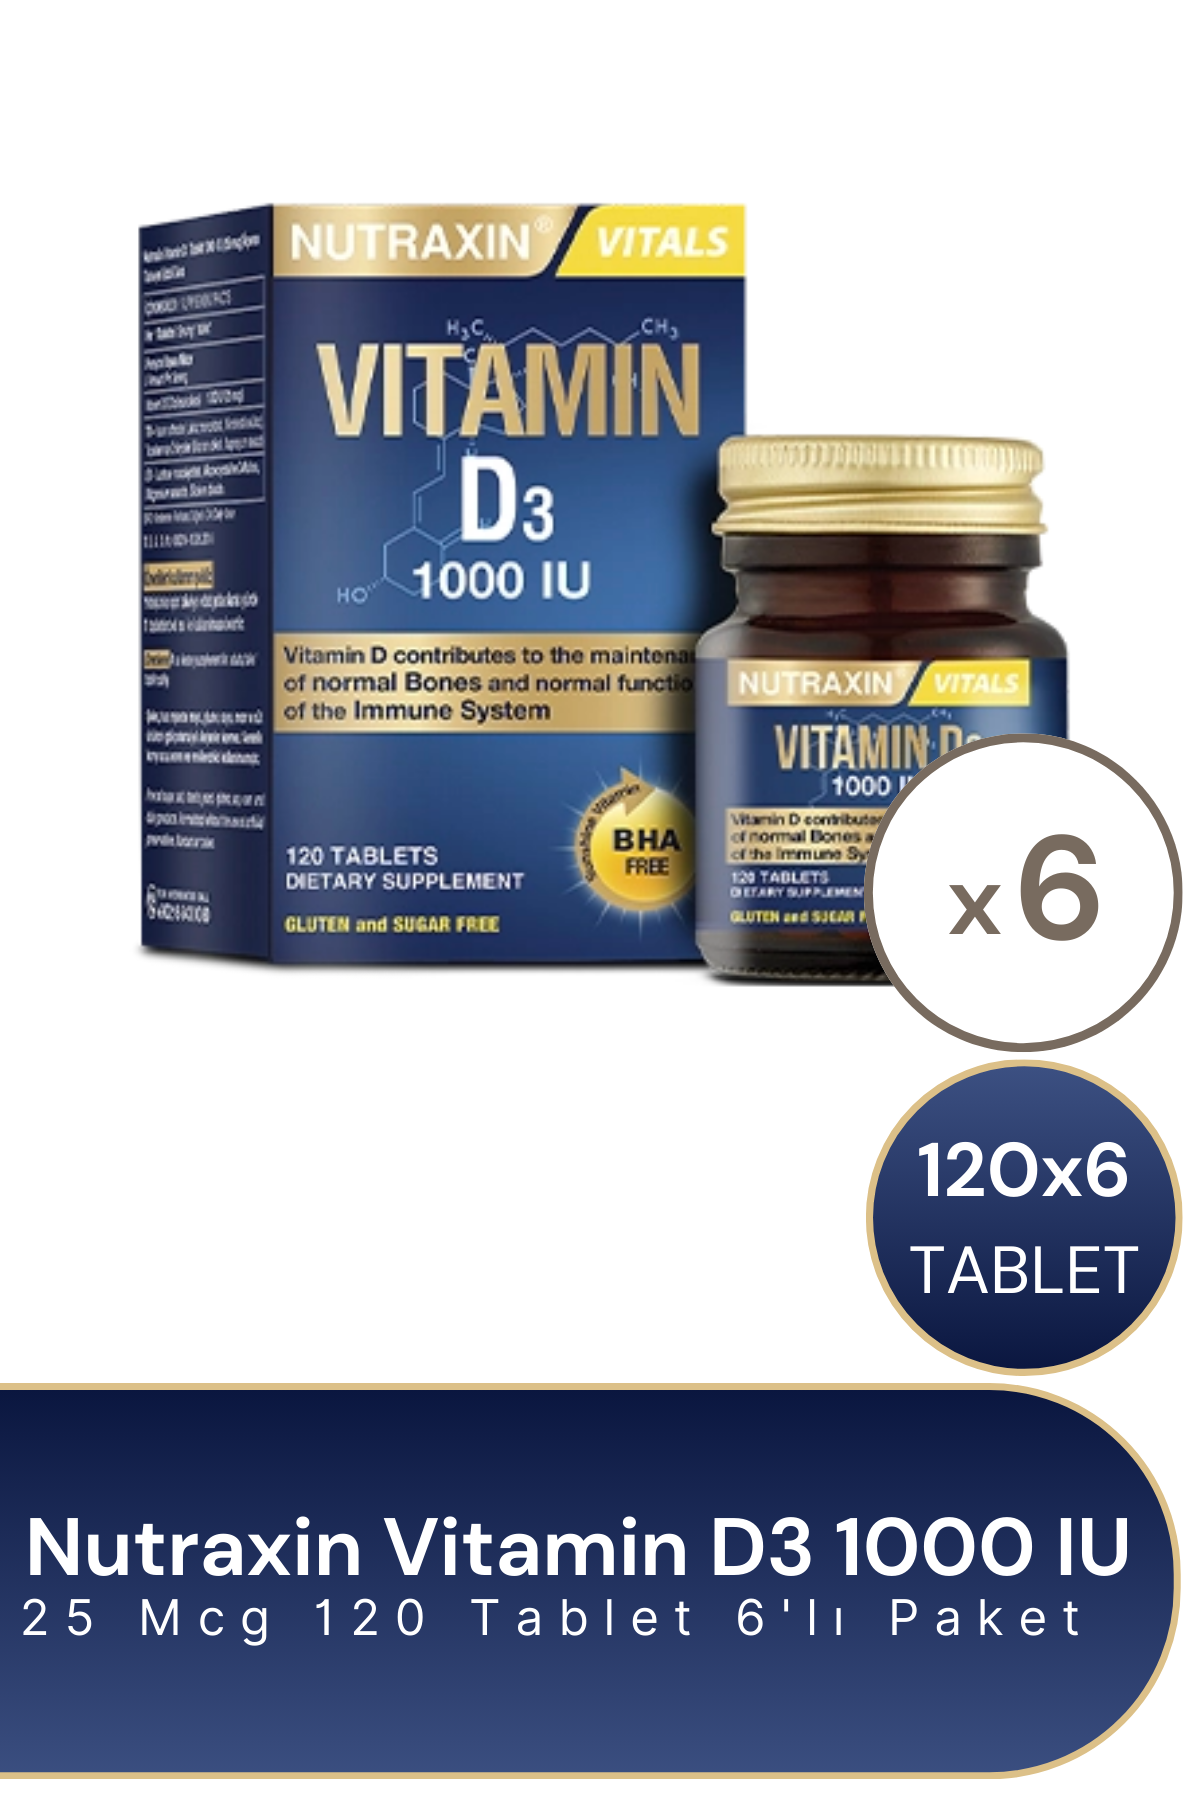 Nutraxin Vitamin D3 1000 IU 120 Tablet 6'lı Paket